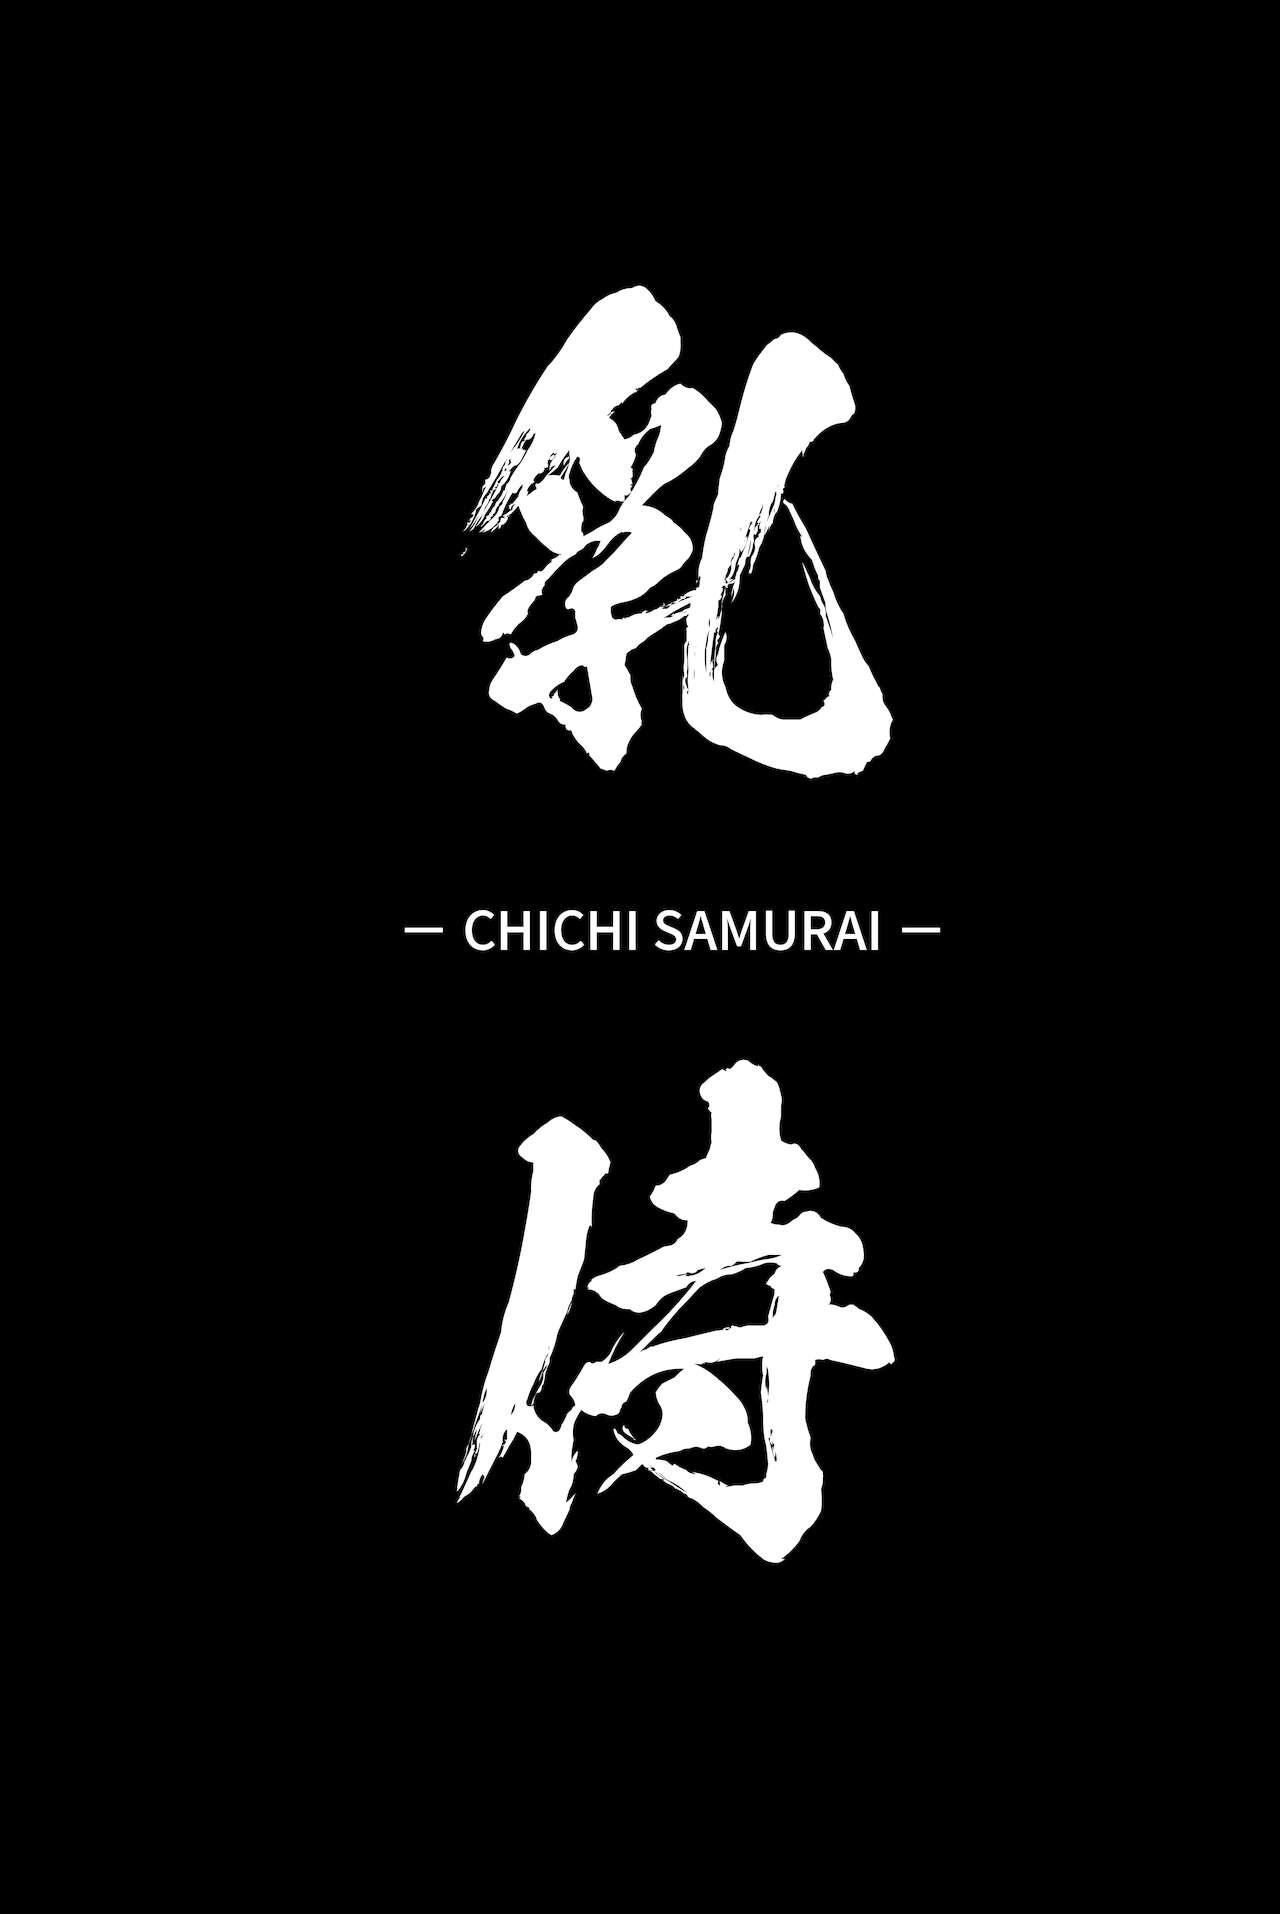 Chichi Samurai | Titty Samurai 1